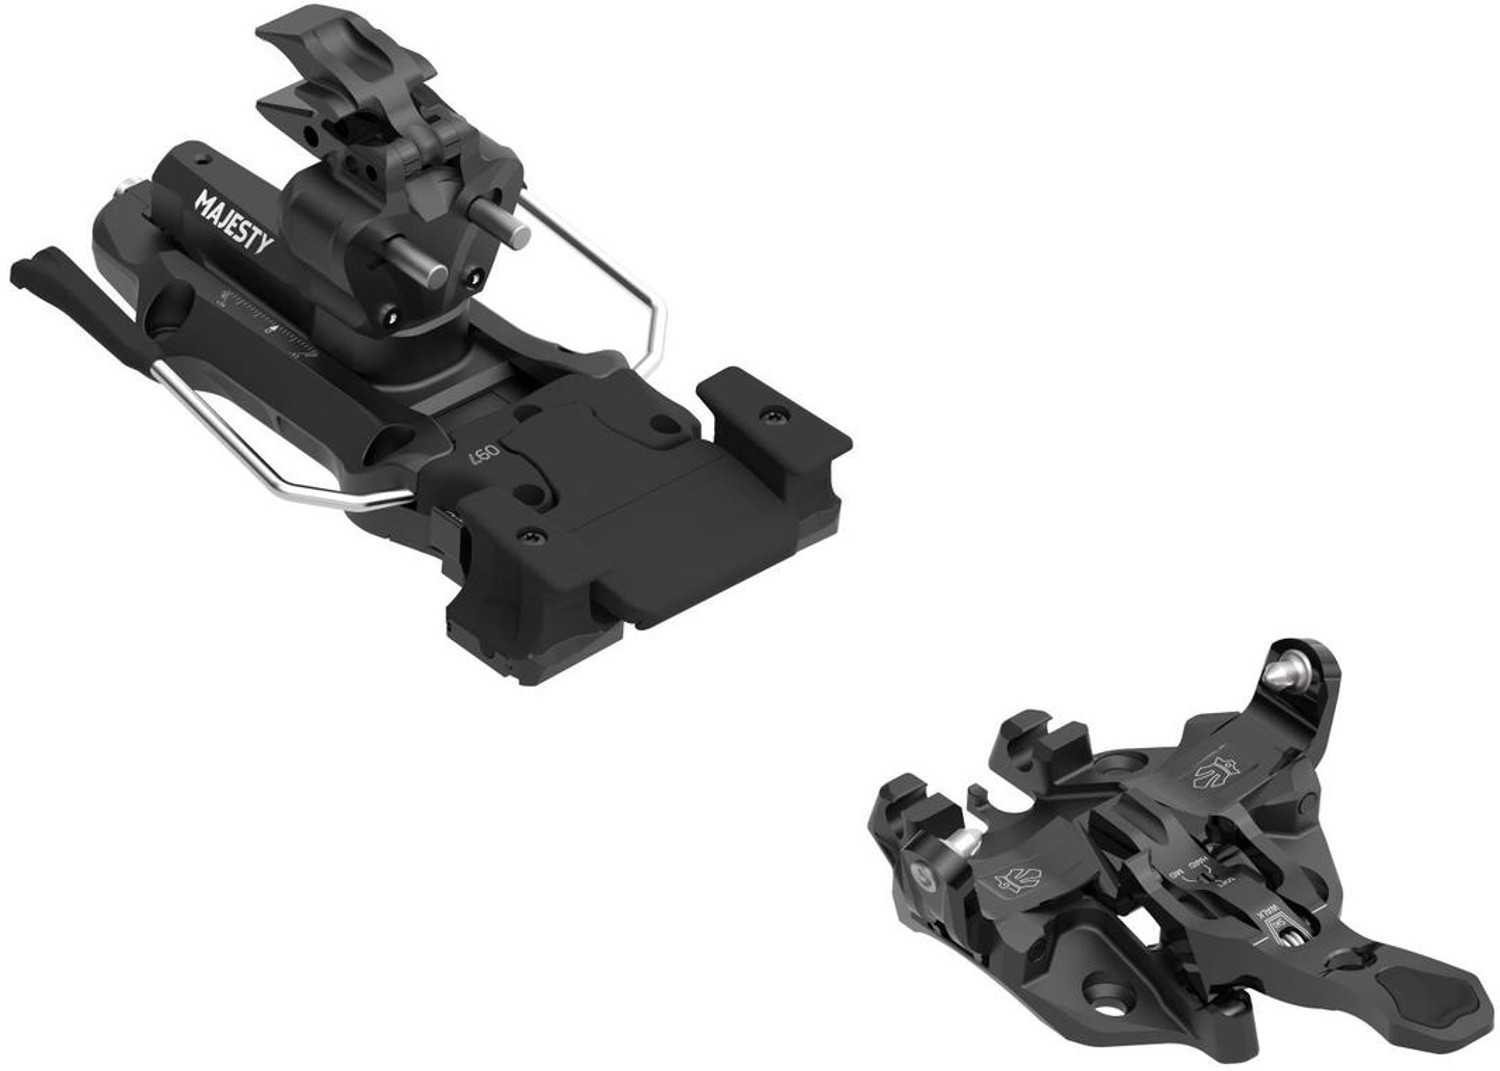 Горнолыжные крепления MAJESTY независимые ATK R12 ski bindings brake 120mm